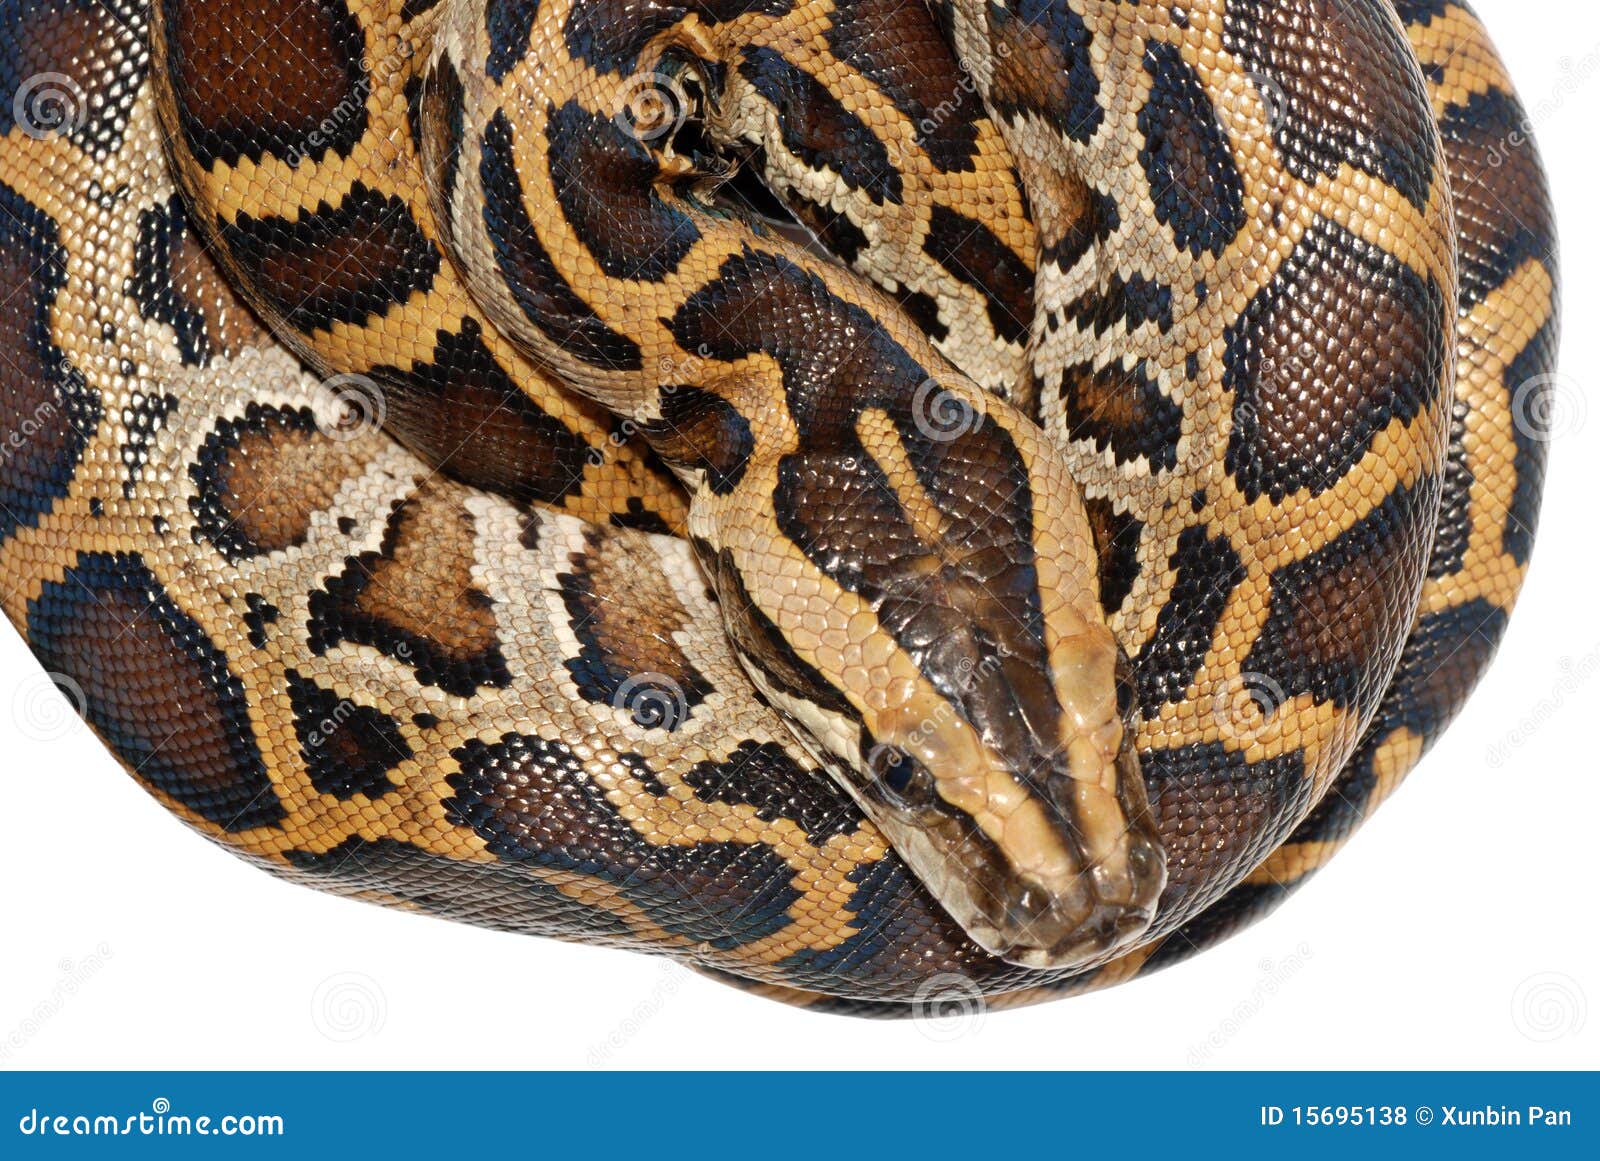 Boa snake stock photo. Image of fashion, reptilian, fauna - 156951381300 x 960